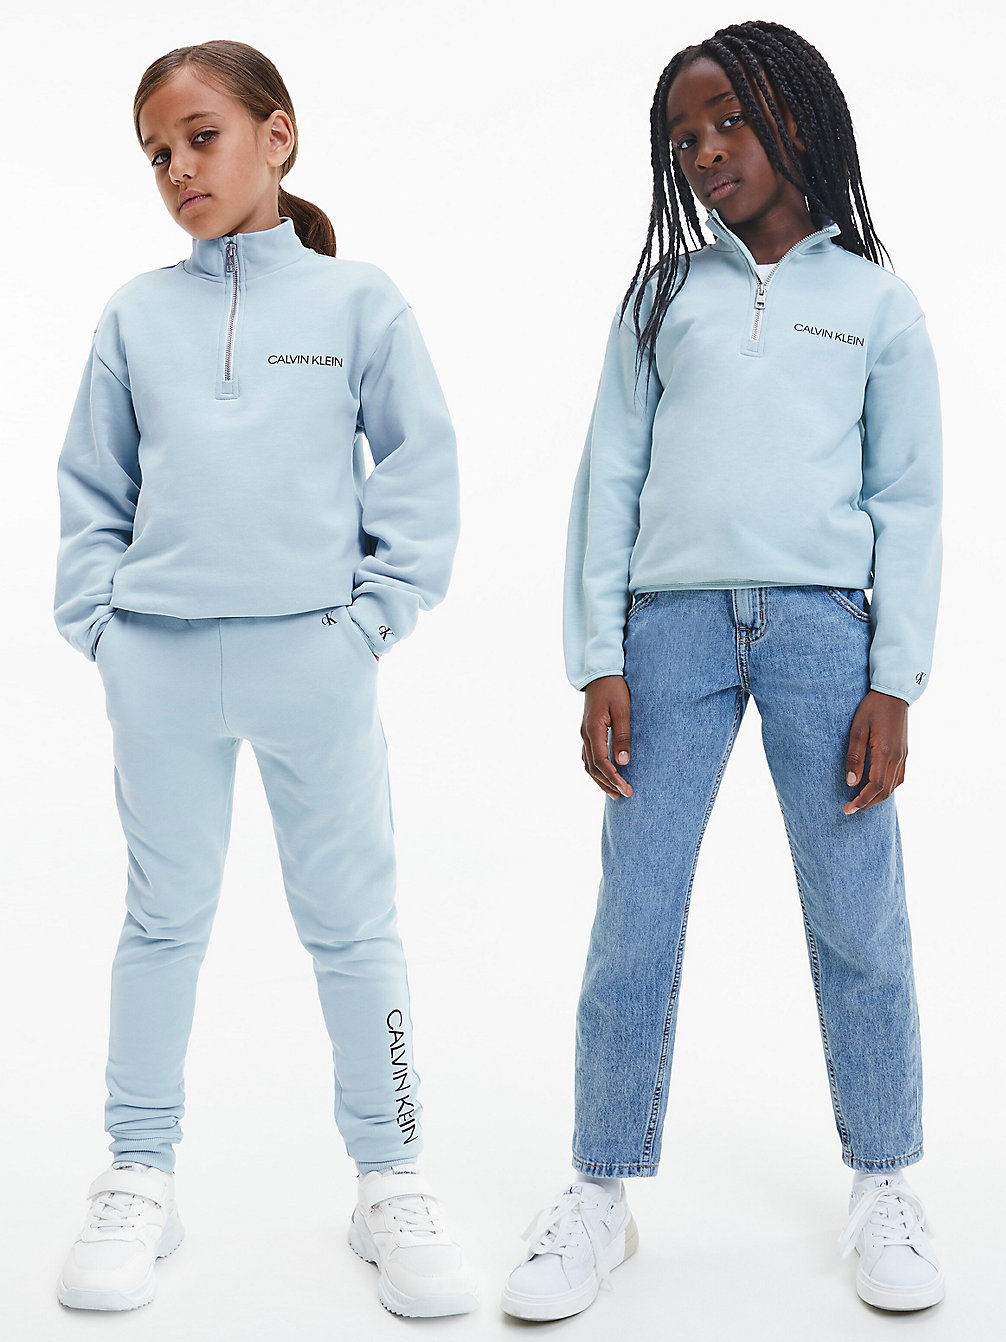 MUTED AQUA Lässiges Unisex Sweatshirt Mit Reißverschlusskragen undefined kids unisex Calvin Klein